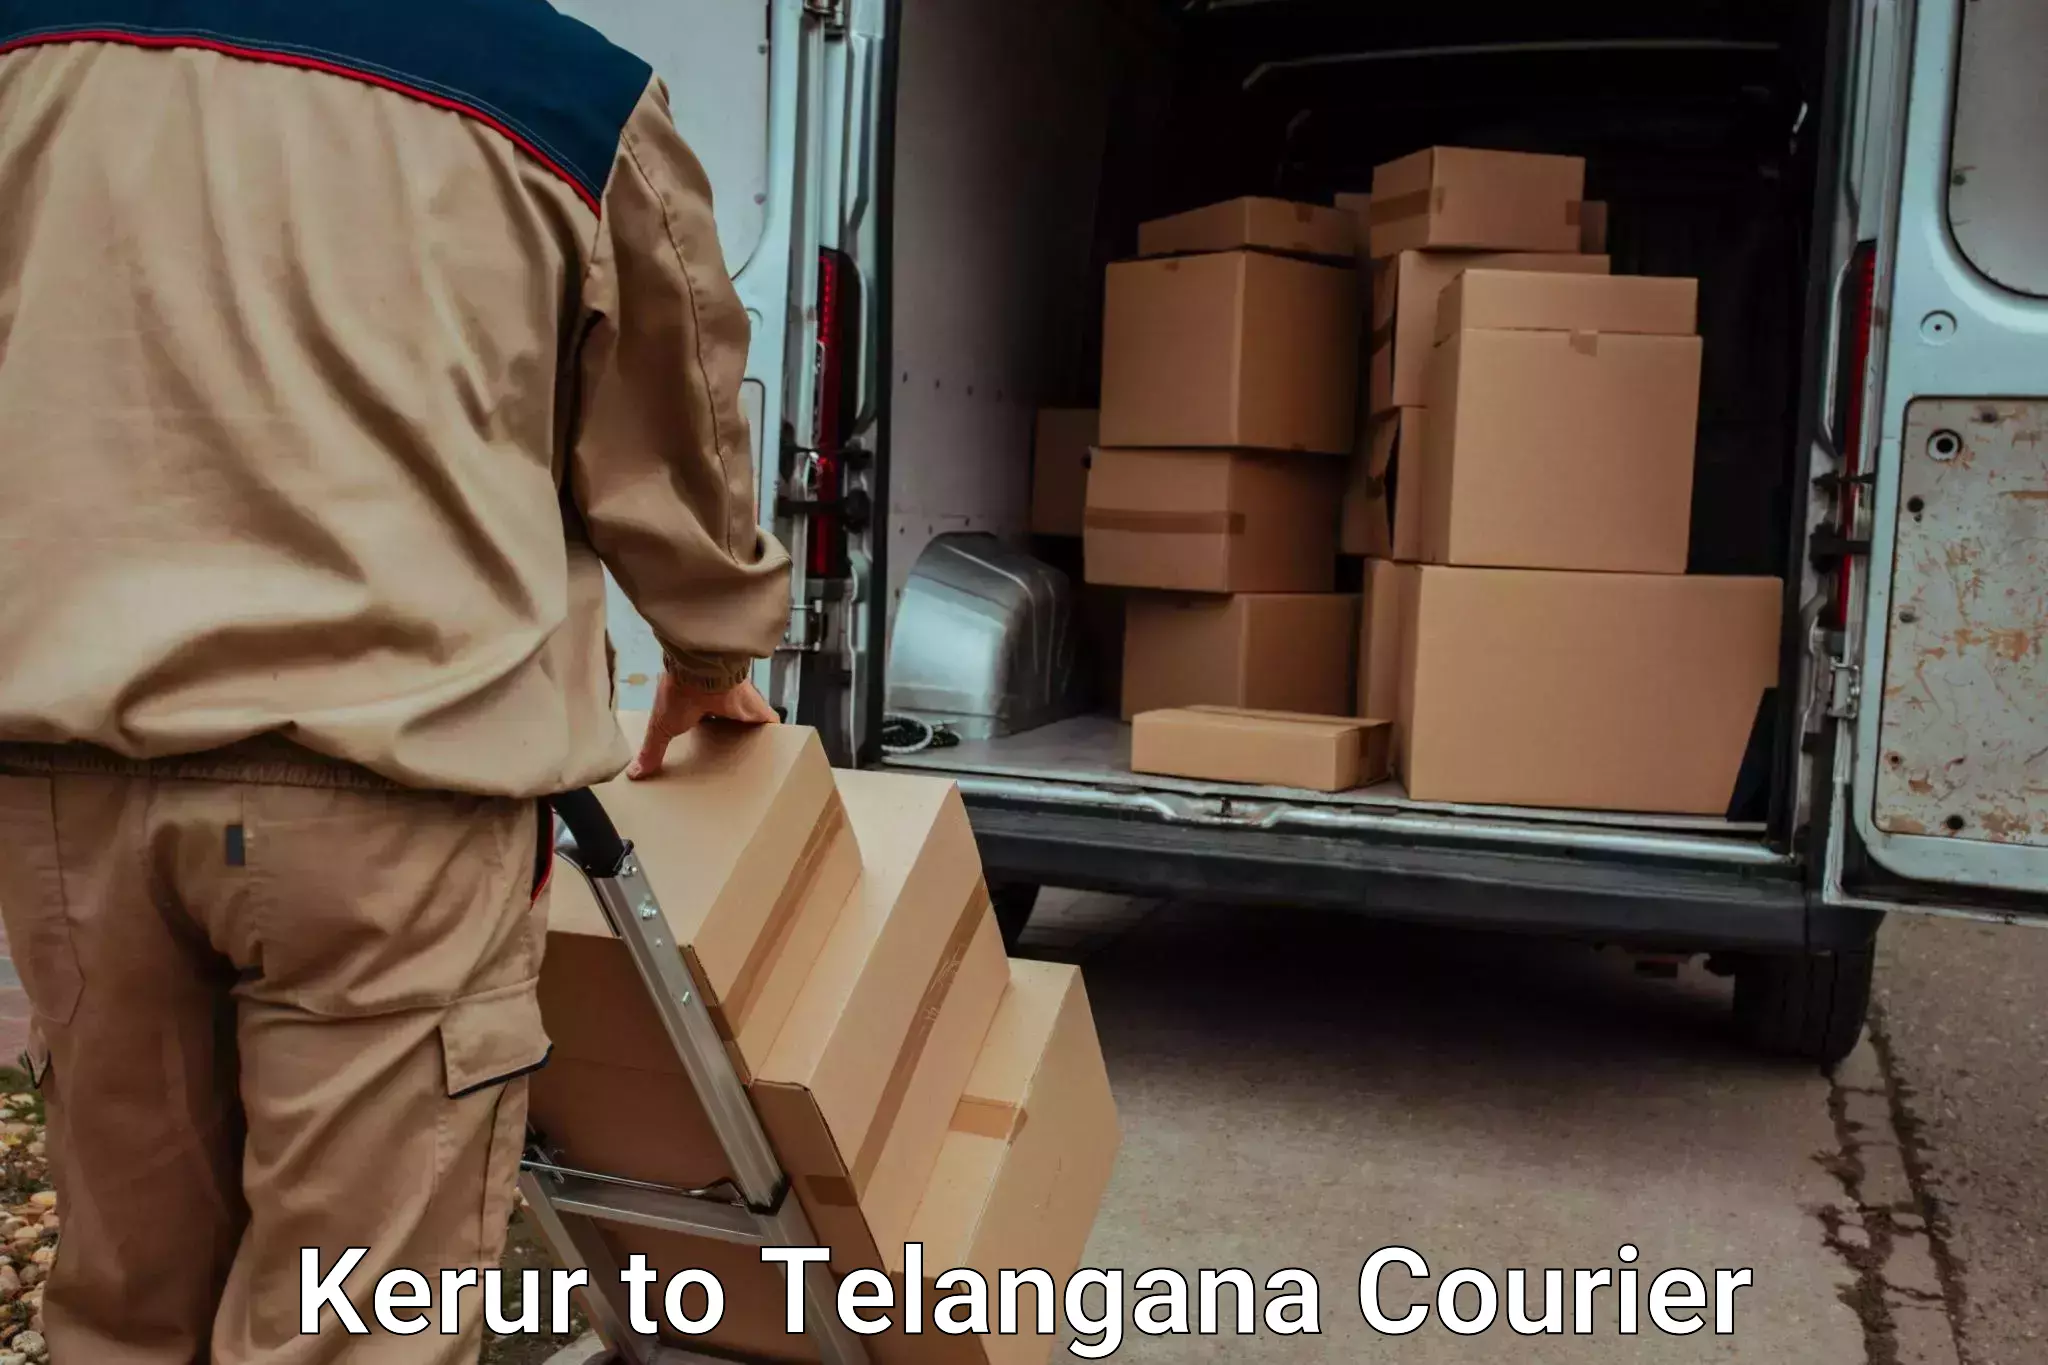 Emergency baggage service in Kerur to Yerrupalem